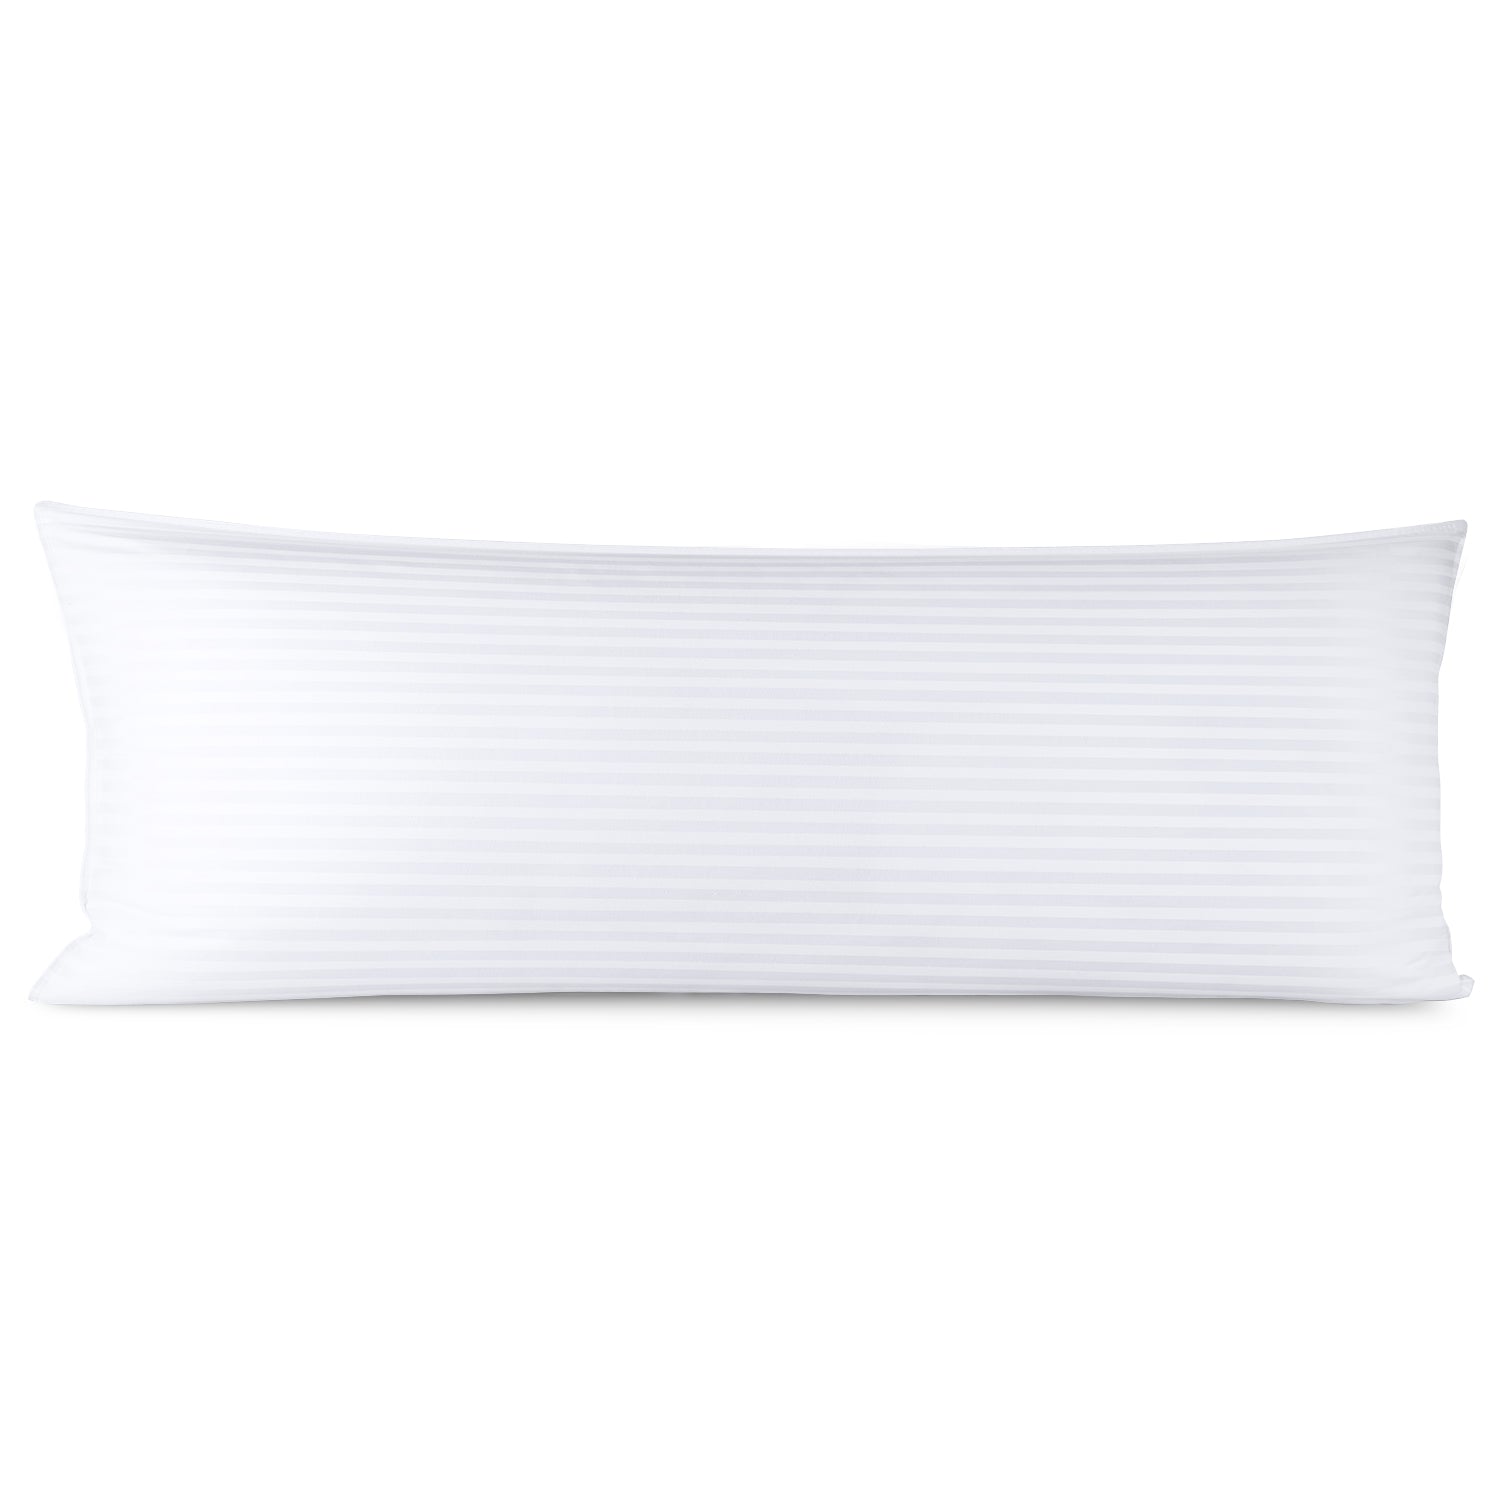 Nestl Pillow Insert & Reviews